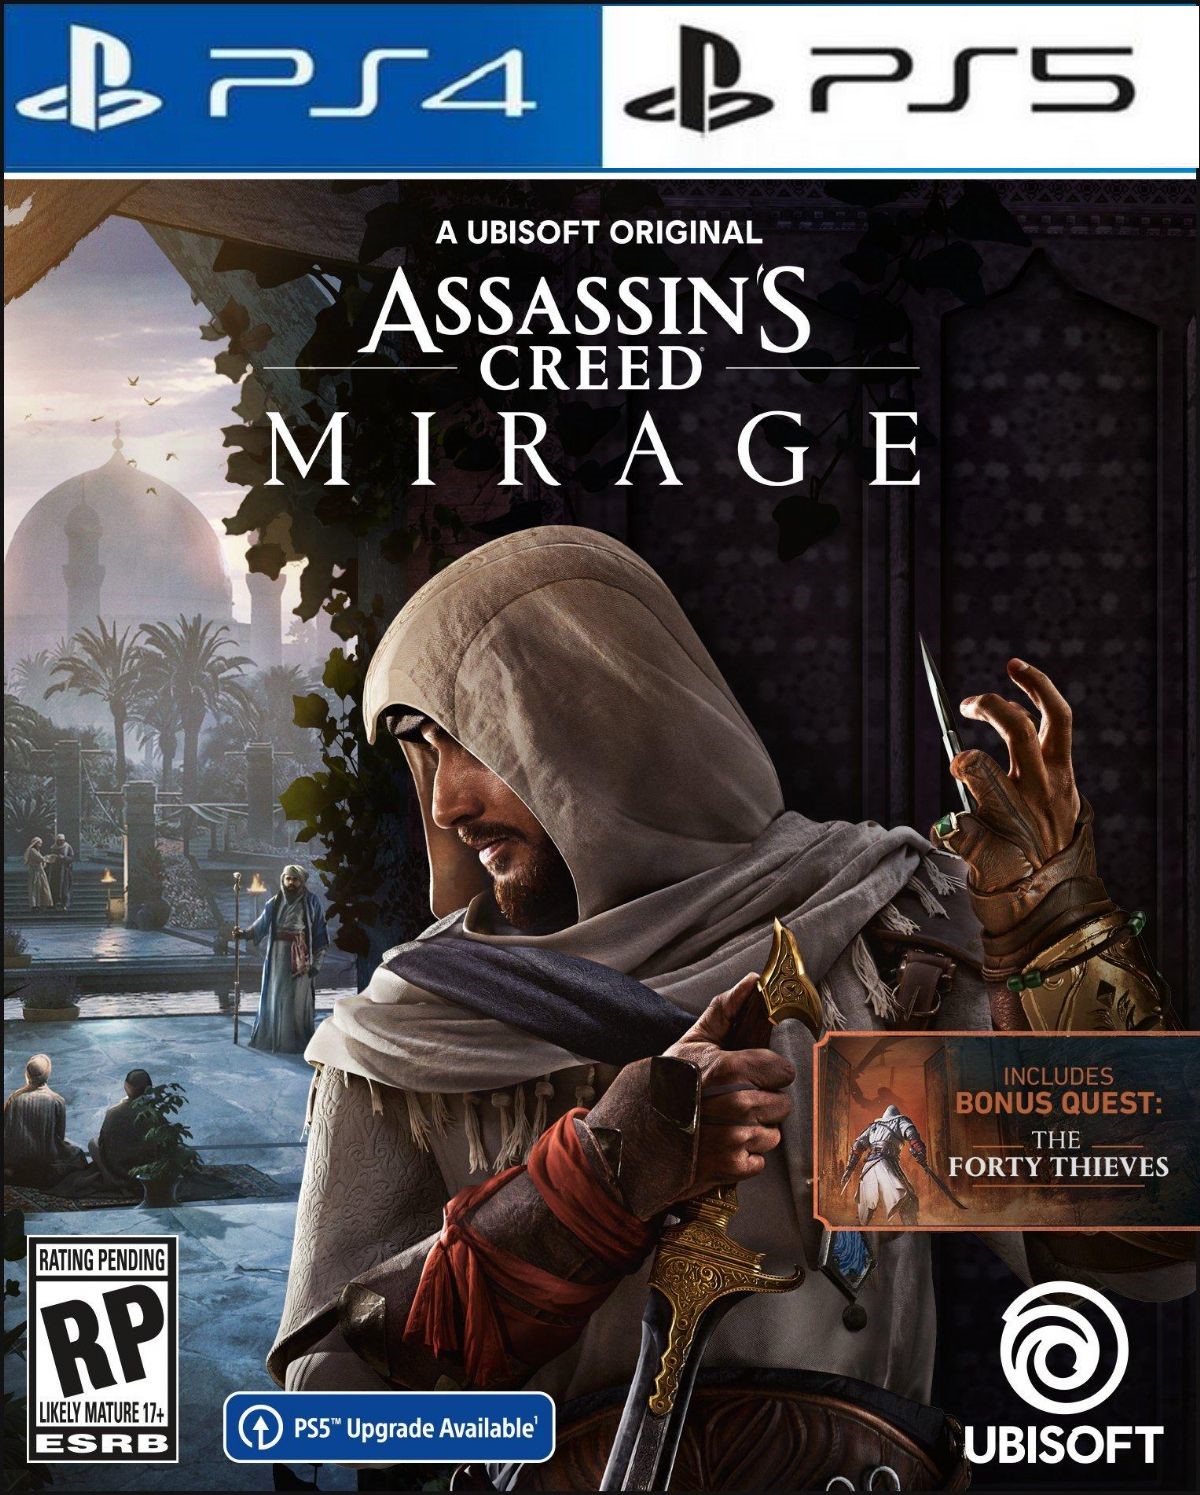 Assassins Creed Mirage para PS5 Ubisoft - Lançamento - Jogos em Lançamento  - Magazine Luiza